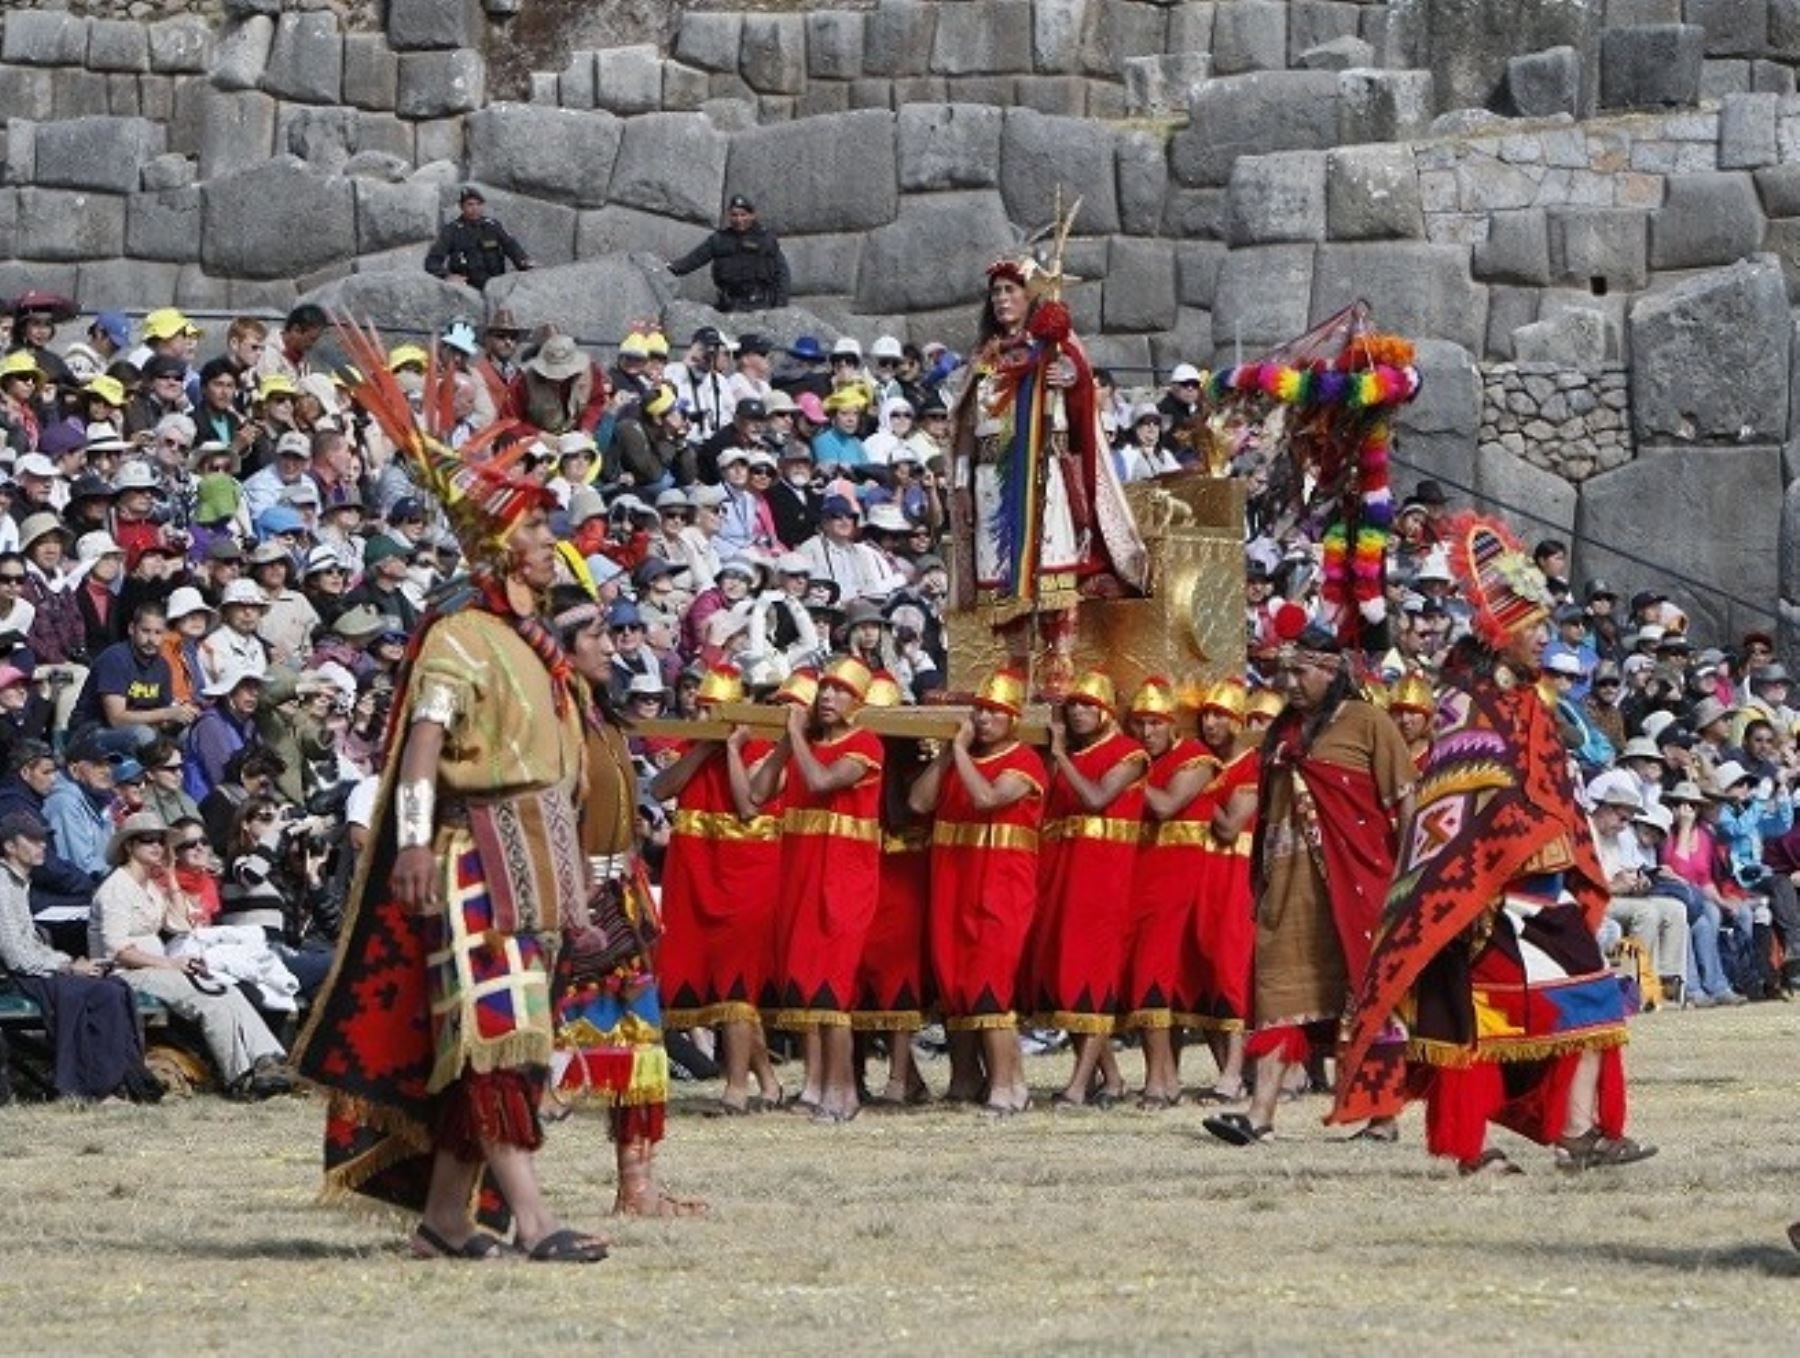 Nueva York sería la ciudad elegida para la ceremonia de lanzamiento internacional de la fiesta del Inti Raymi que se celebra el 24 de junio en Cusco. ANDINA/Percy Hurtado Santillán